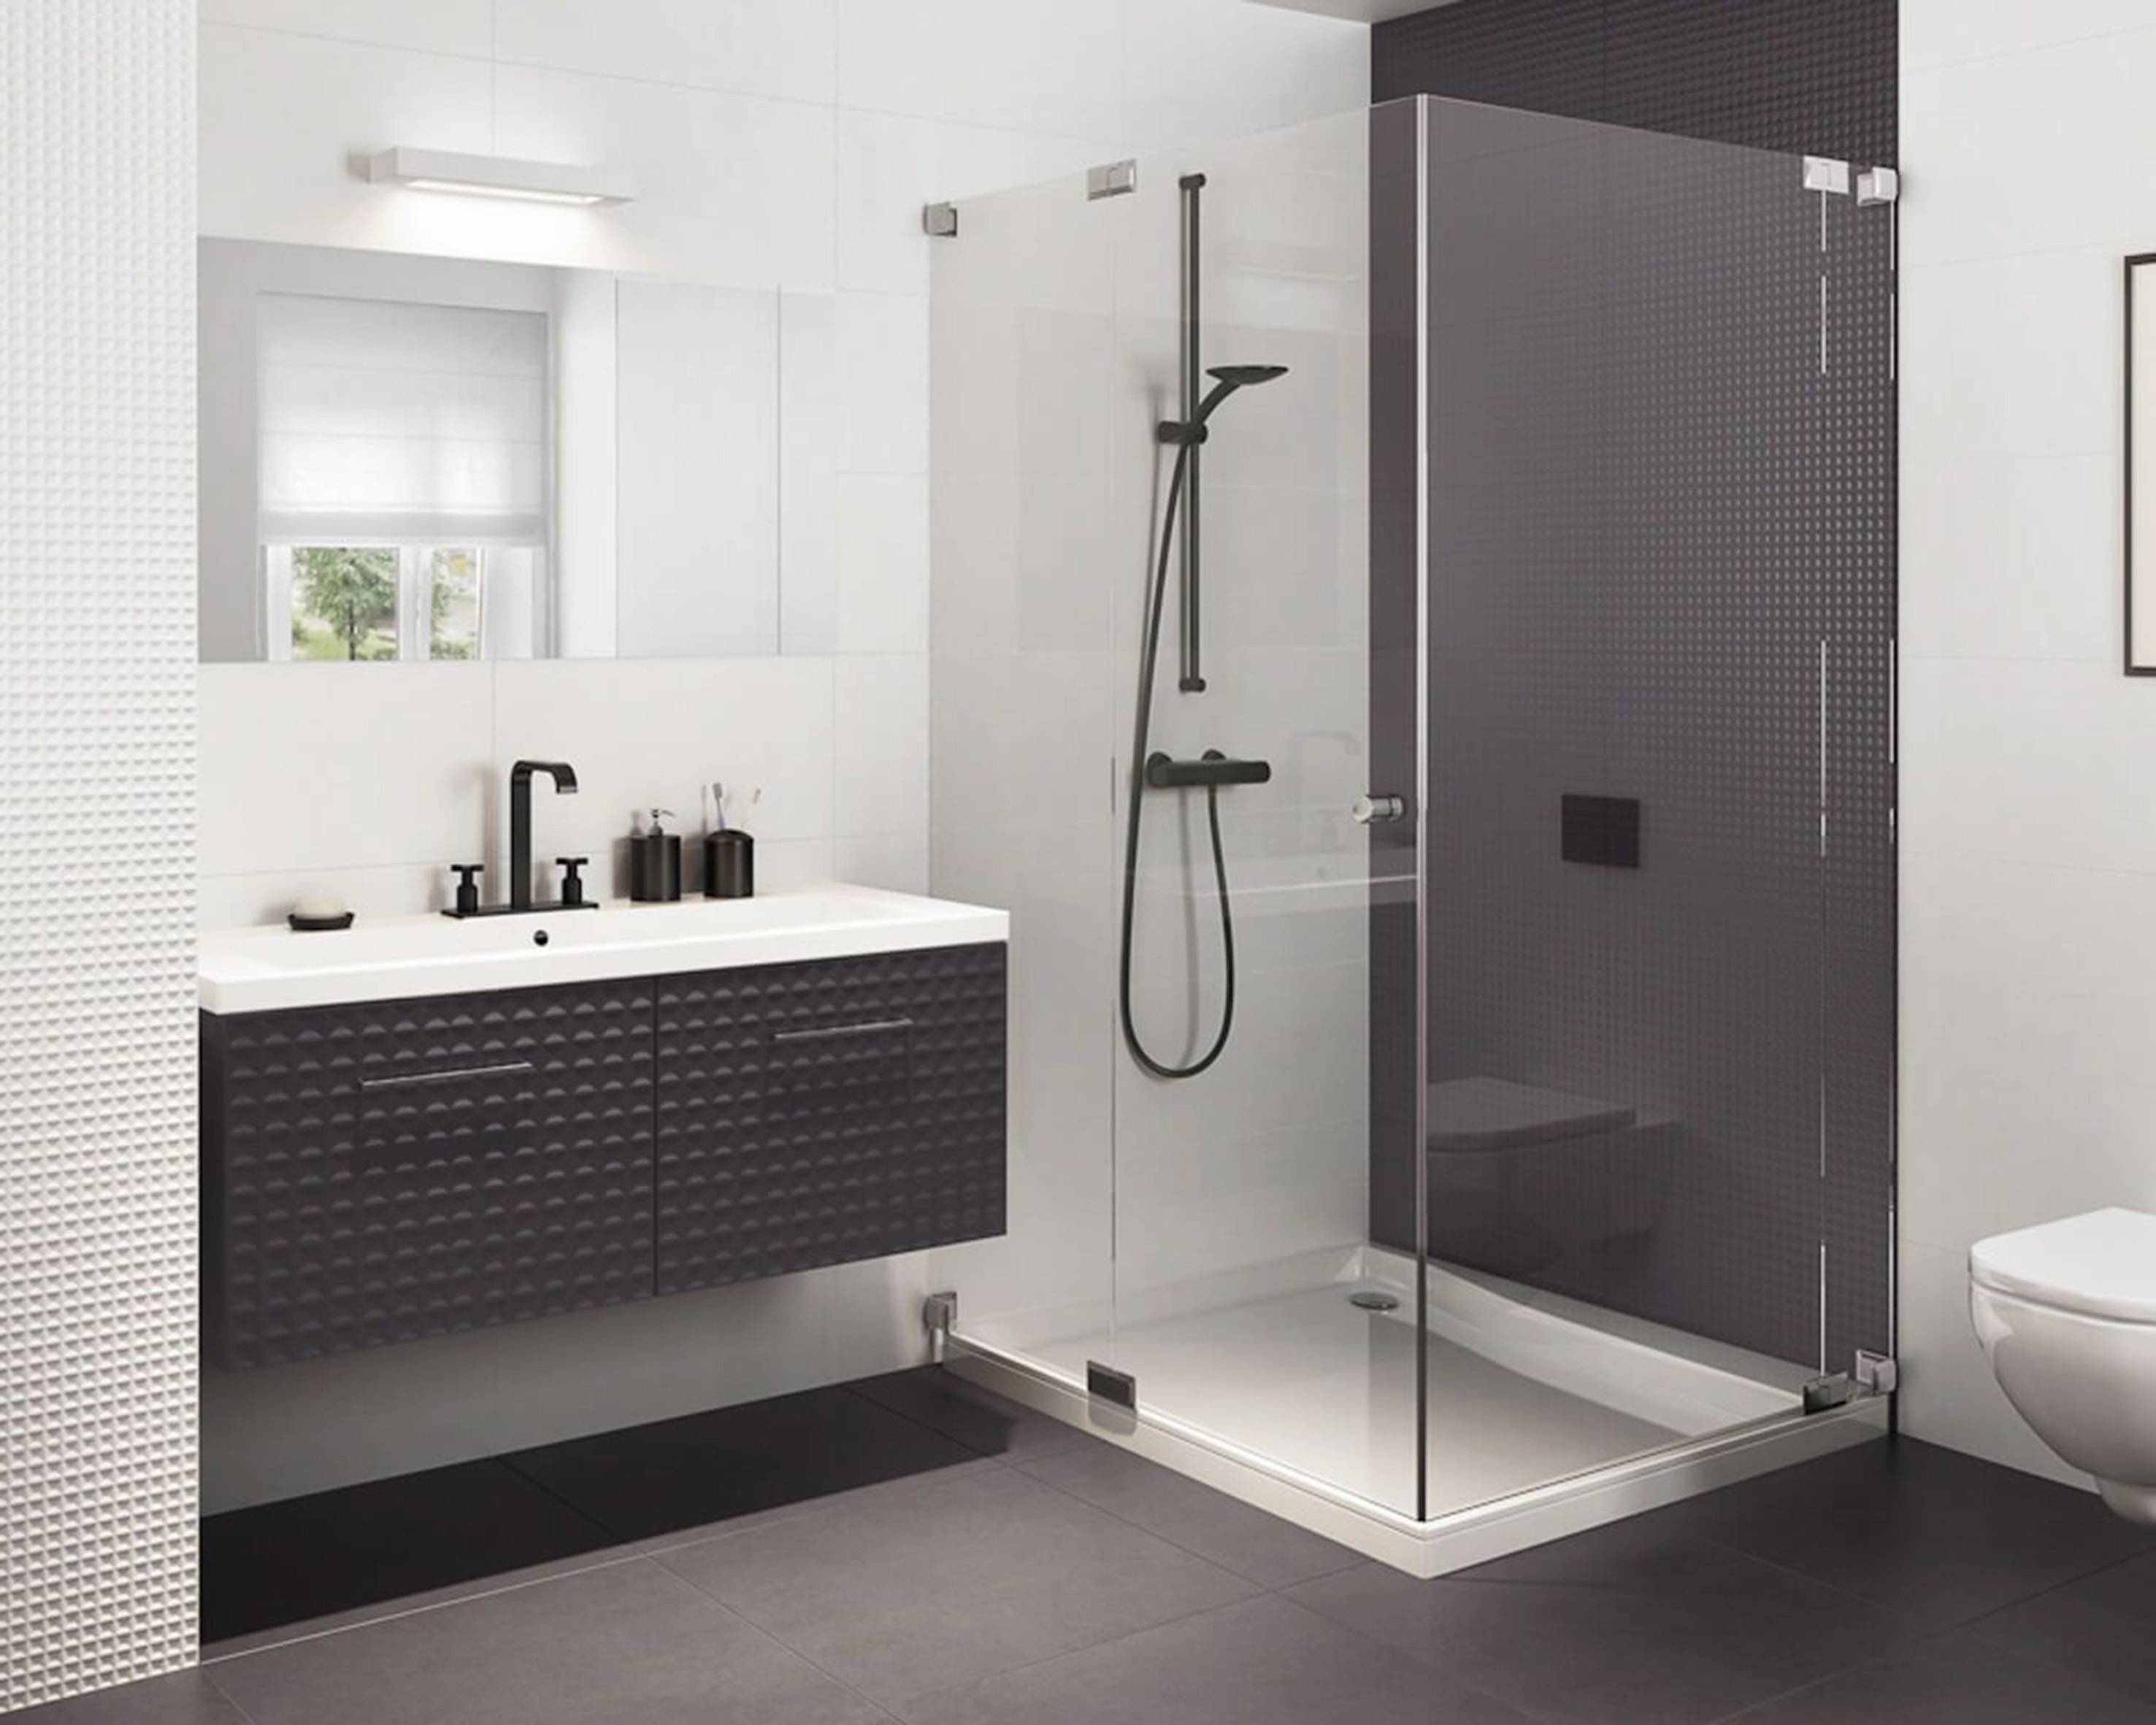 Фото душевых: 20 красивых ванных комнат с душевыми кабинами — Roomble.com